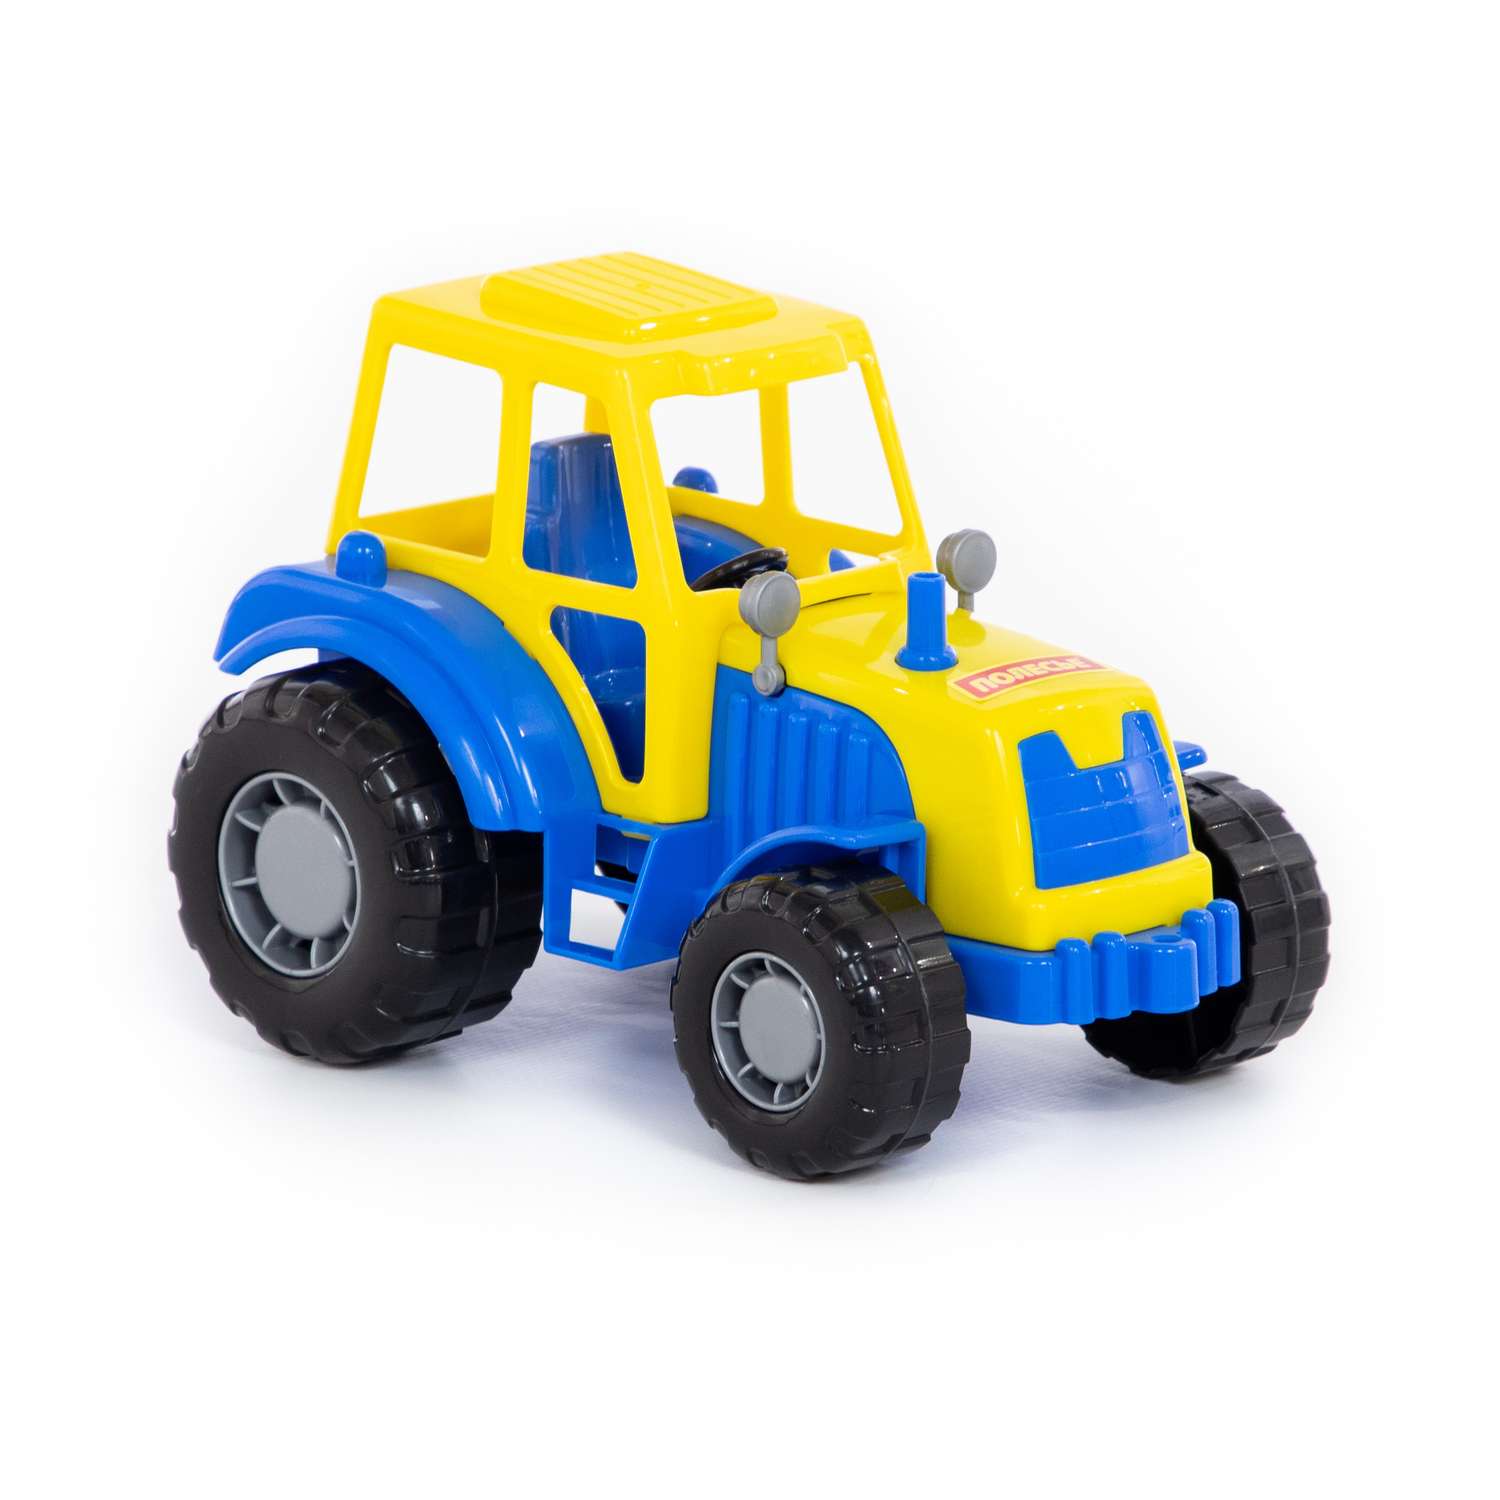 Трактор Полесье Мастер синий с желтым 35240/3 - фото 3